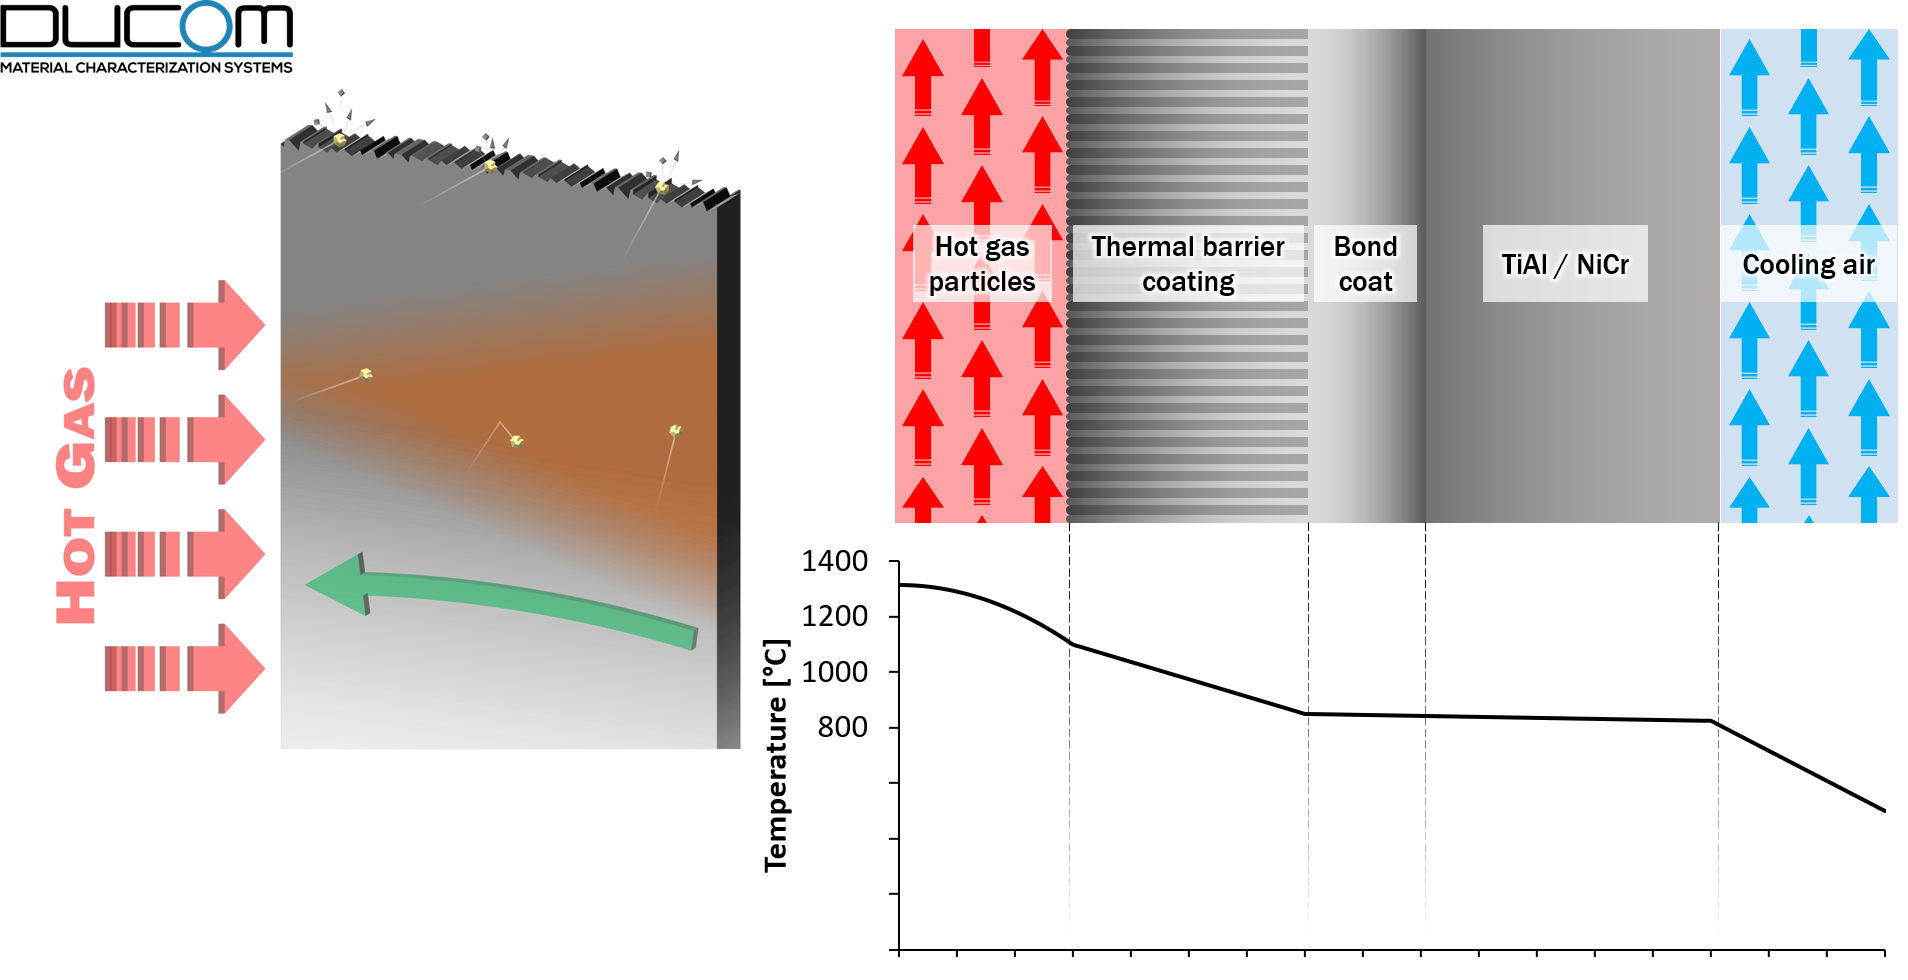 Thermal barrier coatings